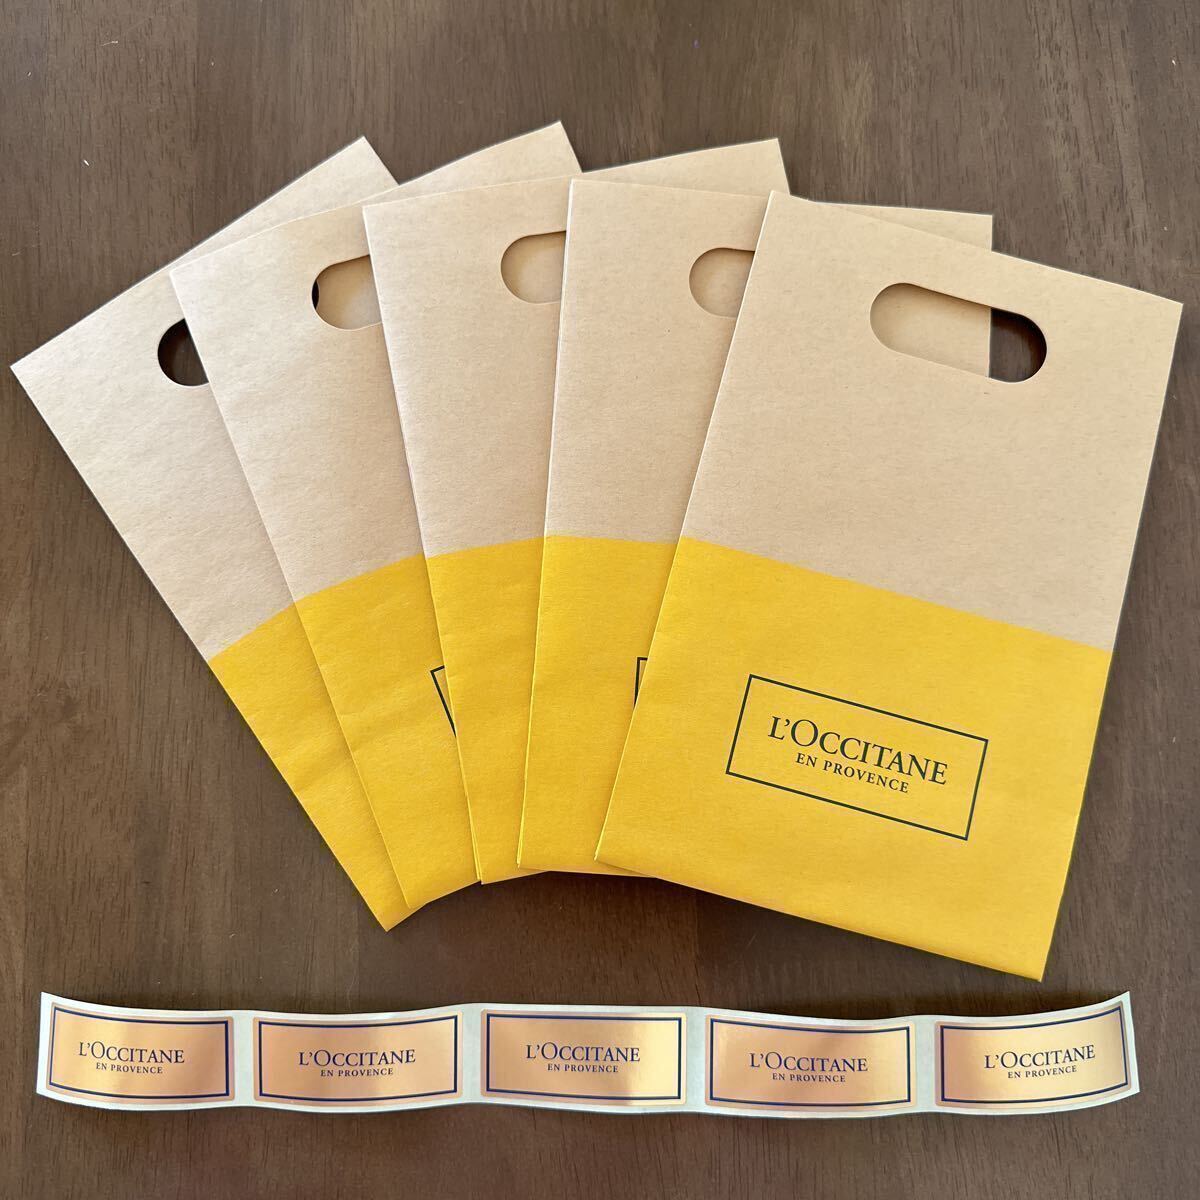 L’OCCITANE ロクシタン ラッピング ギフトバック 紙袋 ロゴシール 5枚セット ステッカー プレゼント ギフト お礼 封筒 マチあり 中 新品の画像1